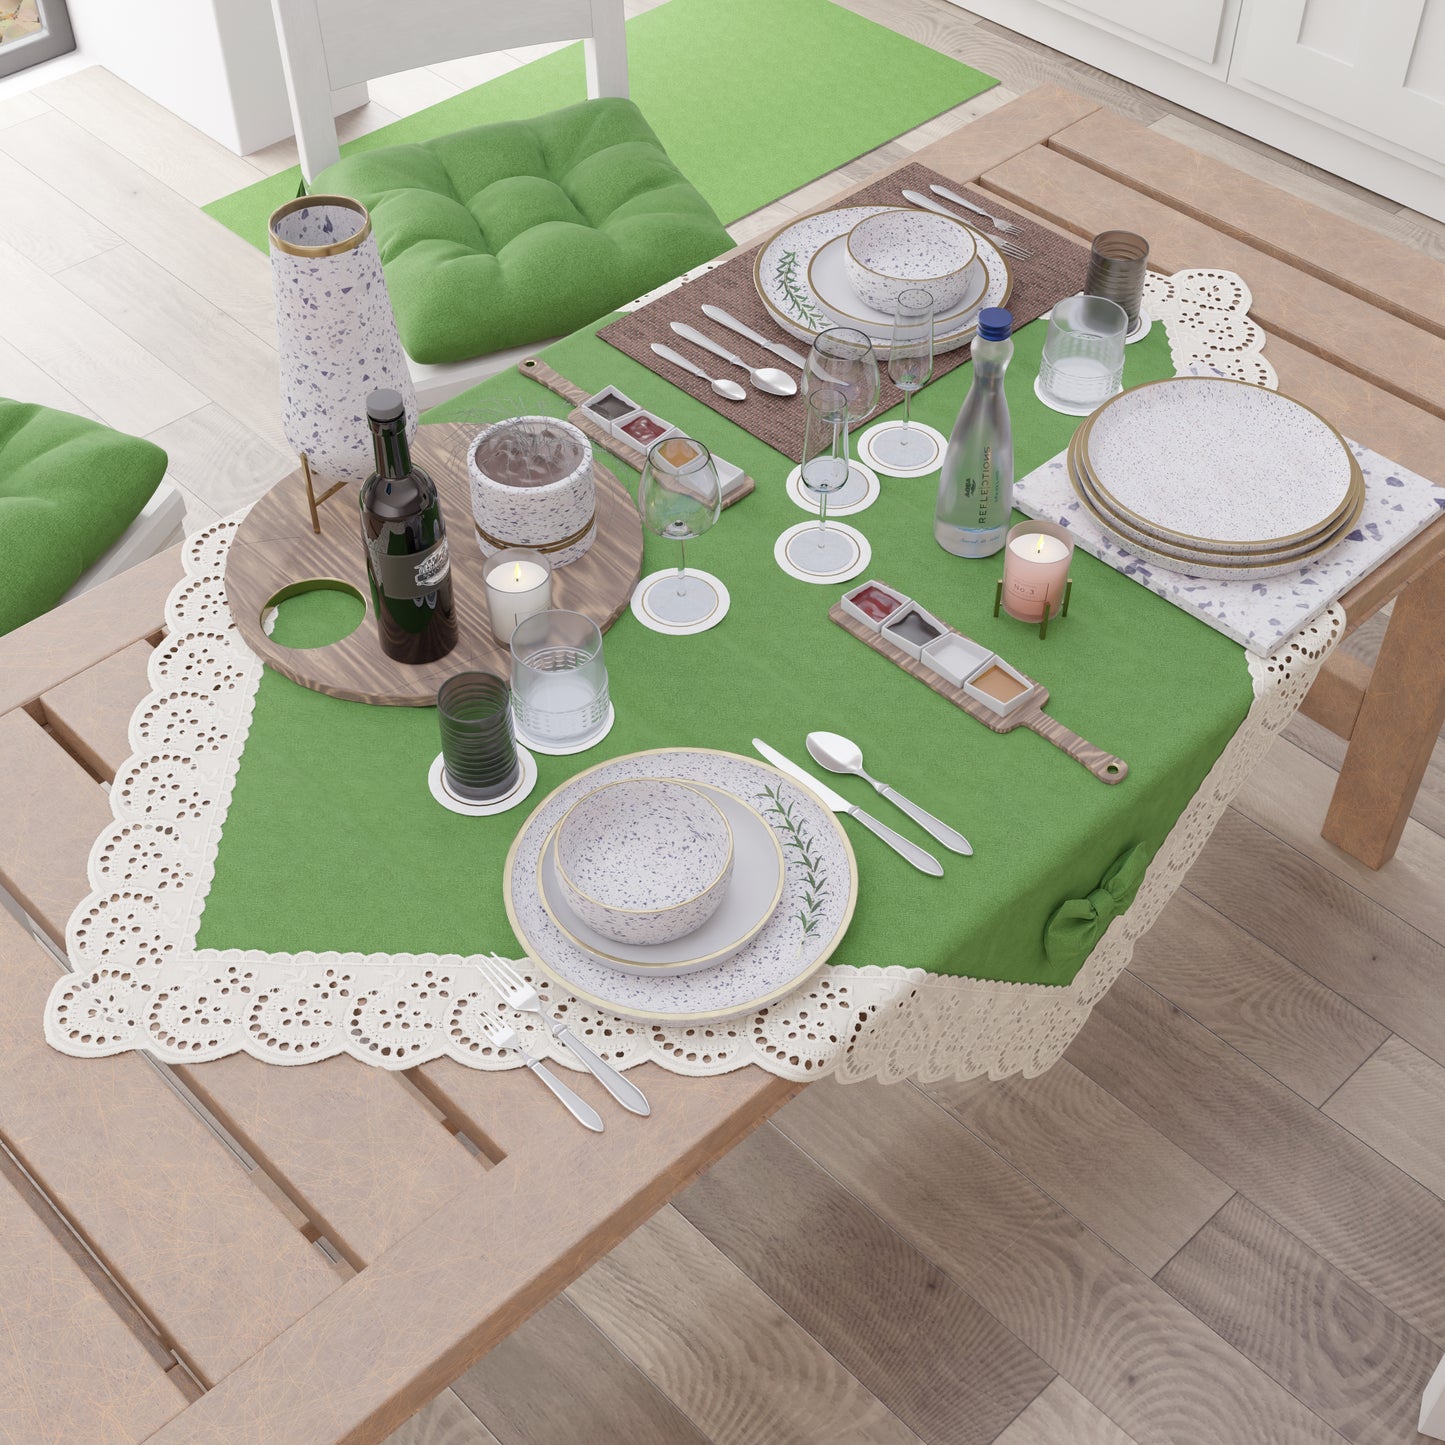 Centrotavola Cucina Elegante Shabby Chic con Pizzo e Fiocchi Verde